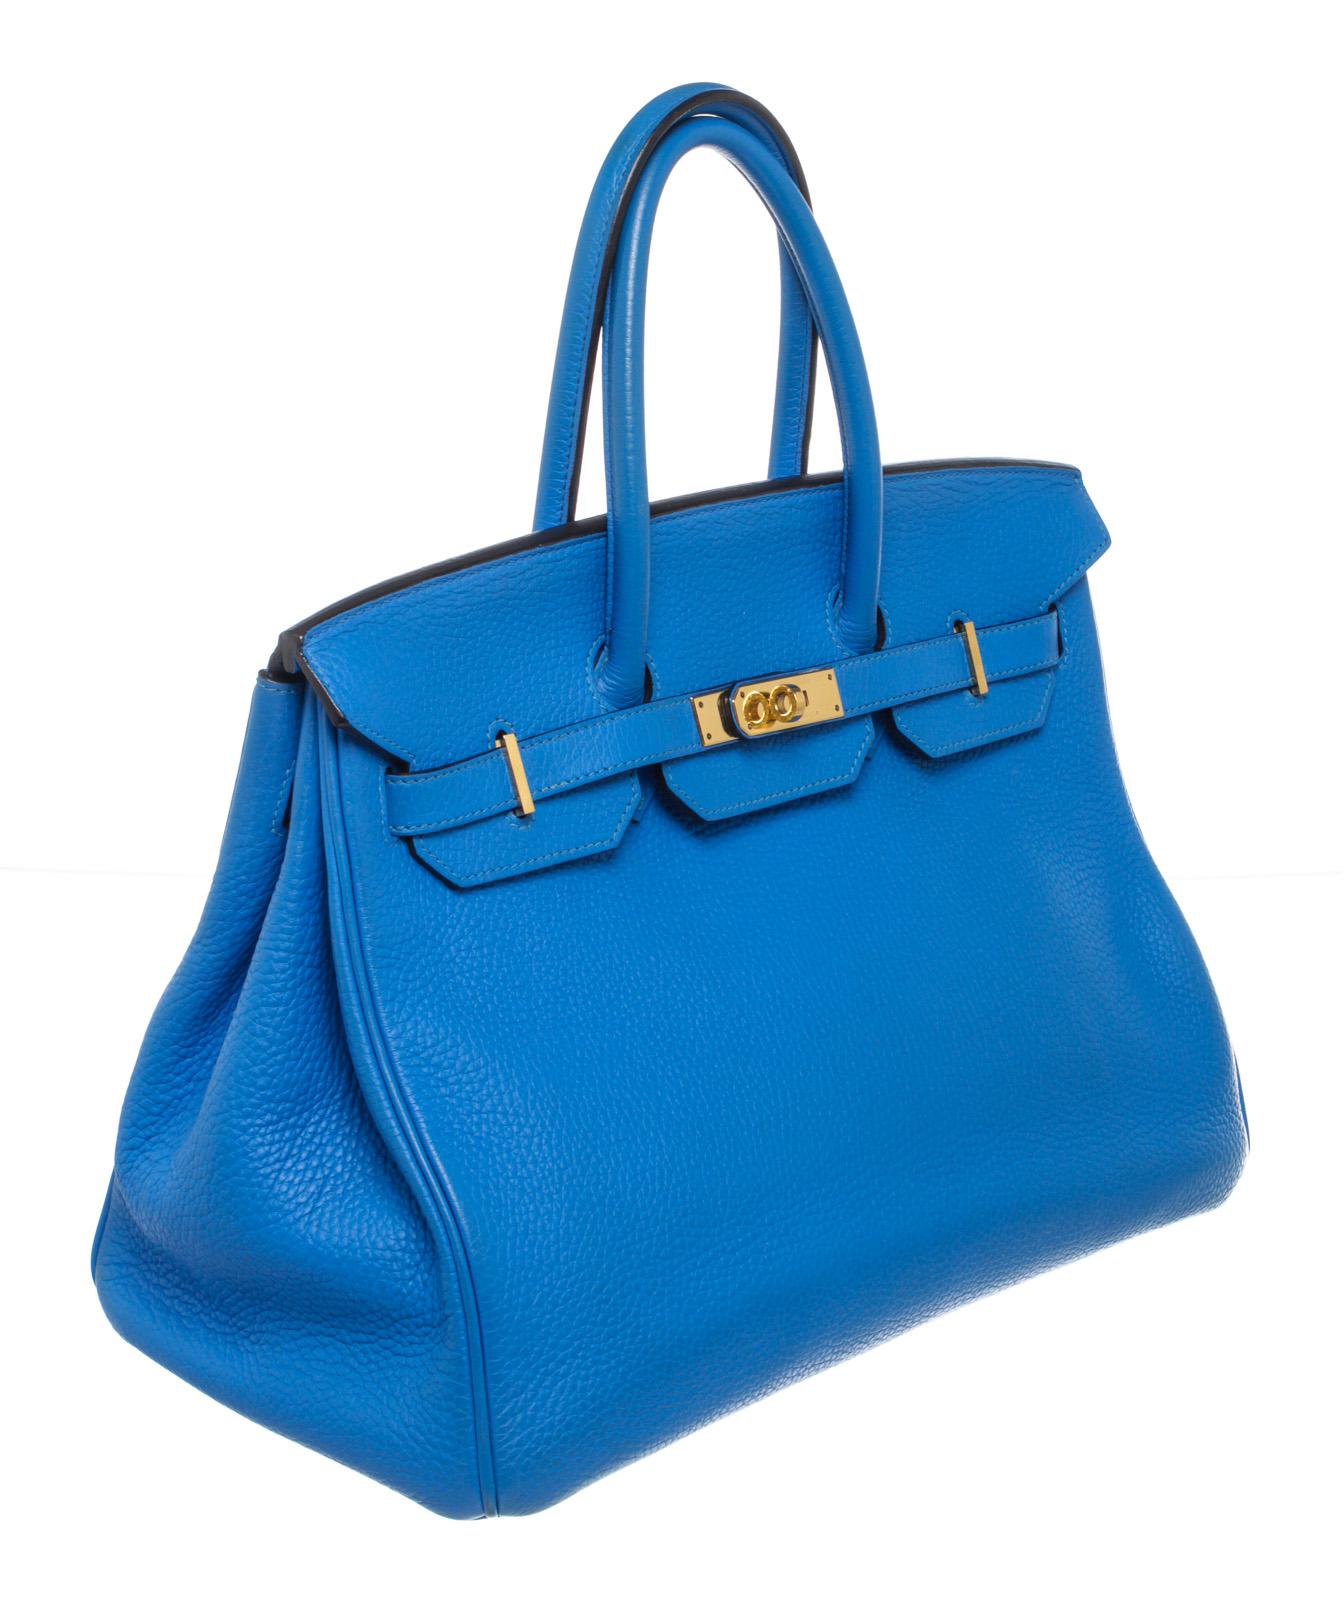 Women's Hermes Blue Toge Leather Birkin 35cm Shoulder Bag